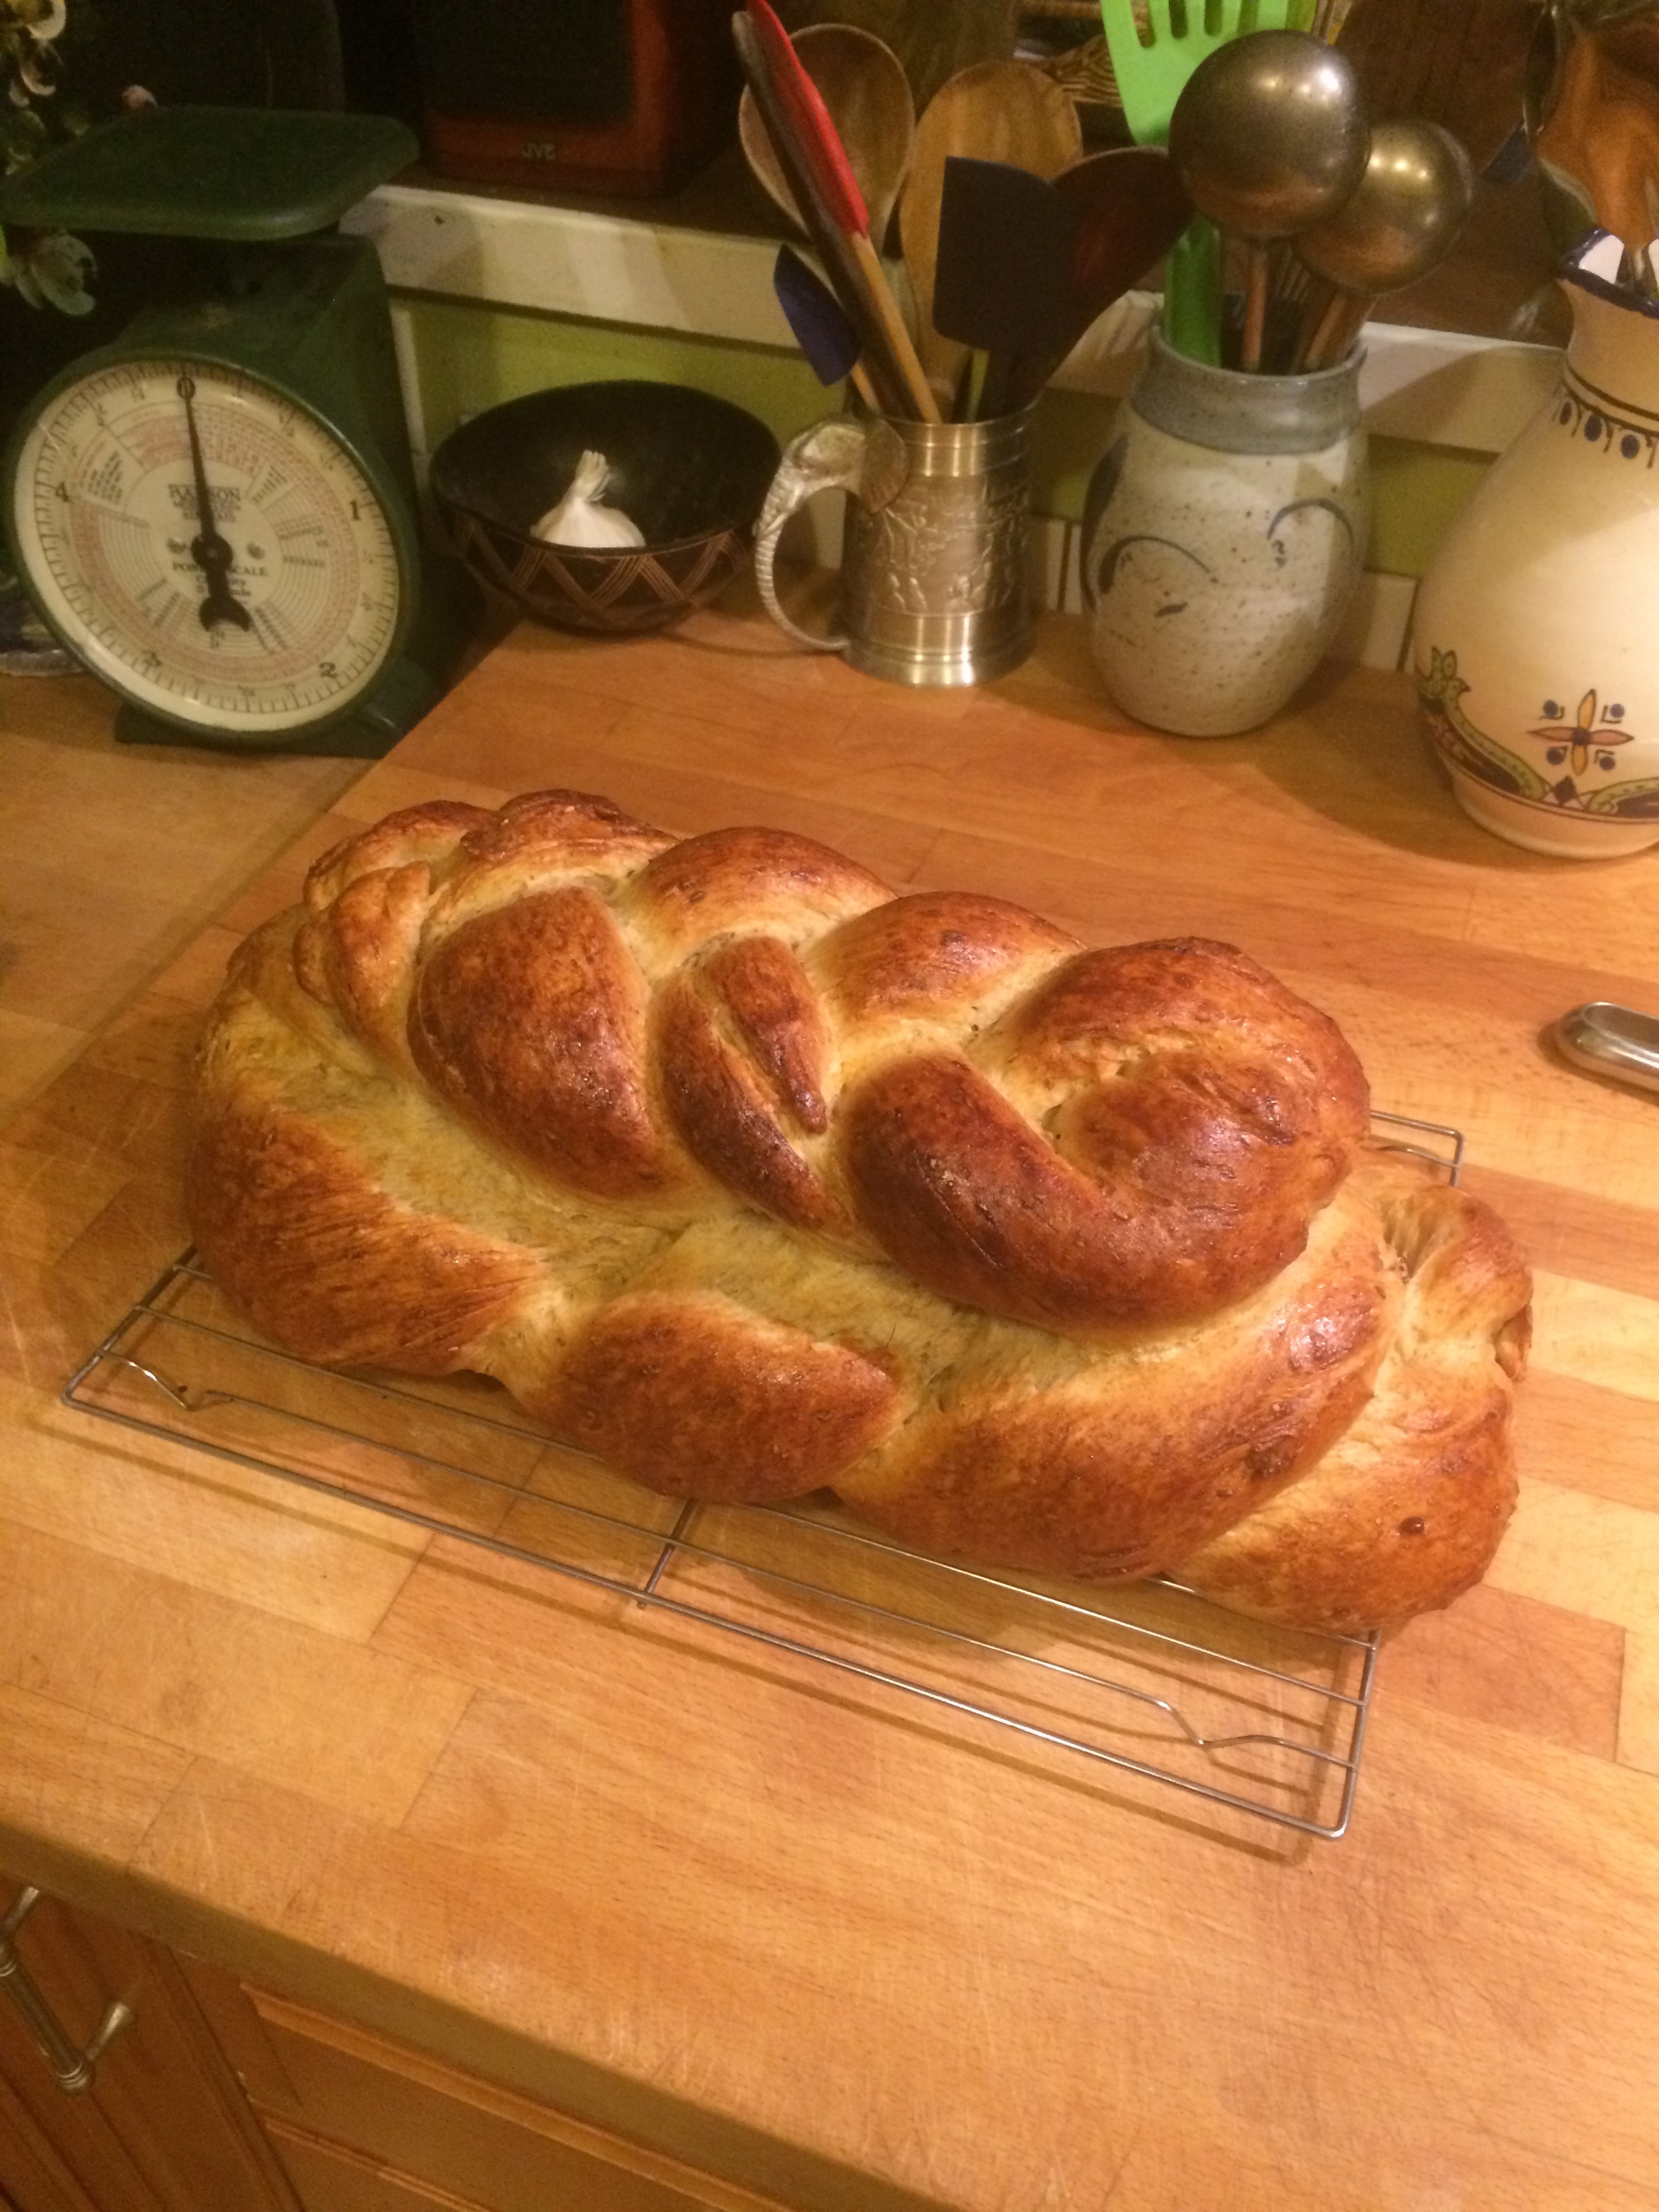 Braided bread loaf.